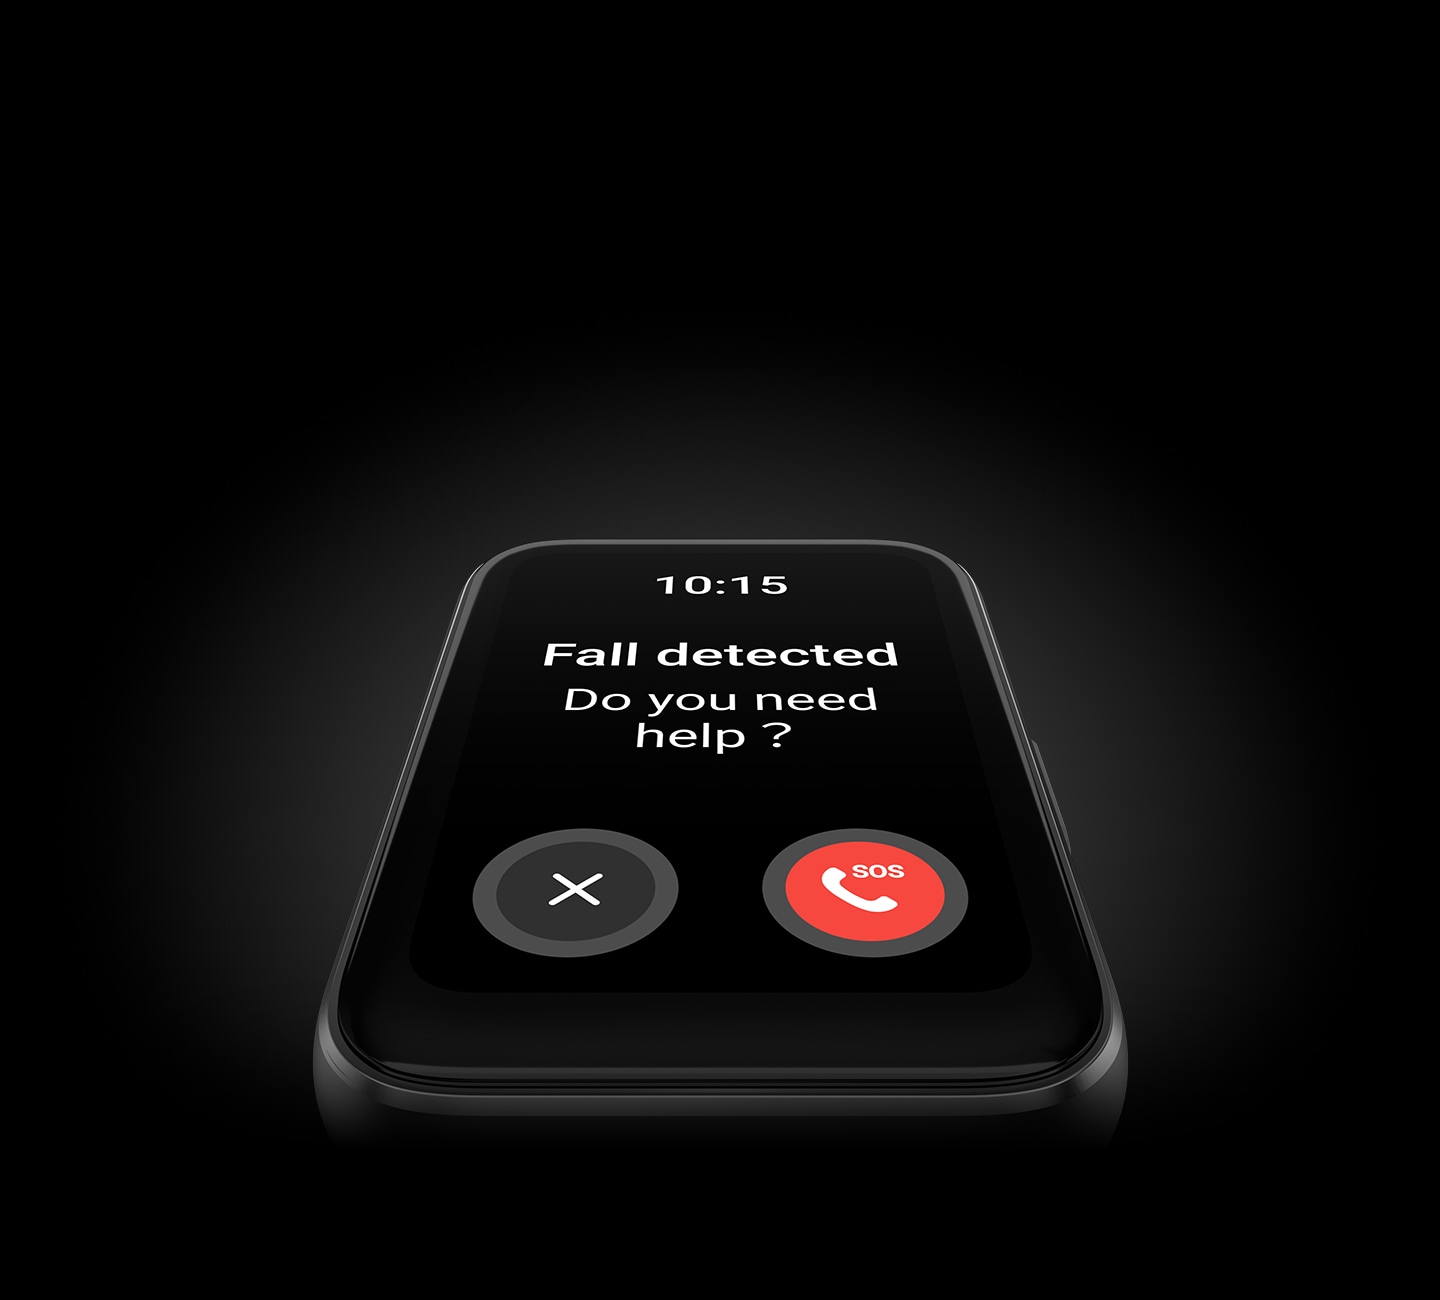 Se muestra un Galaxy Fit3 mostrando la pantalla de detección de caídas en primer plano, preguntando "¿Necesitas ayuda?" con un botón de llamada SOS y un botón de cancelación.